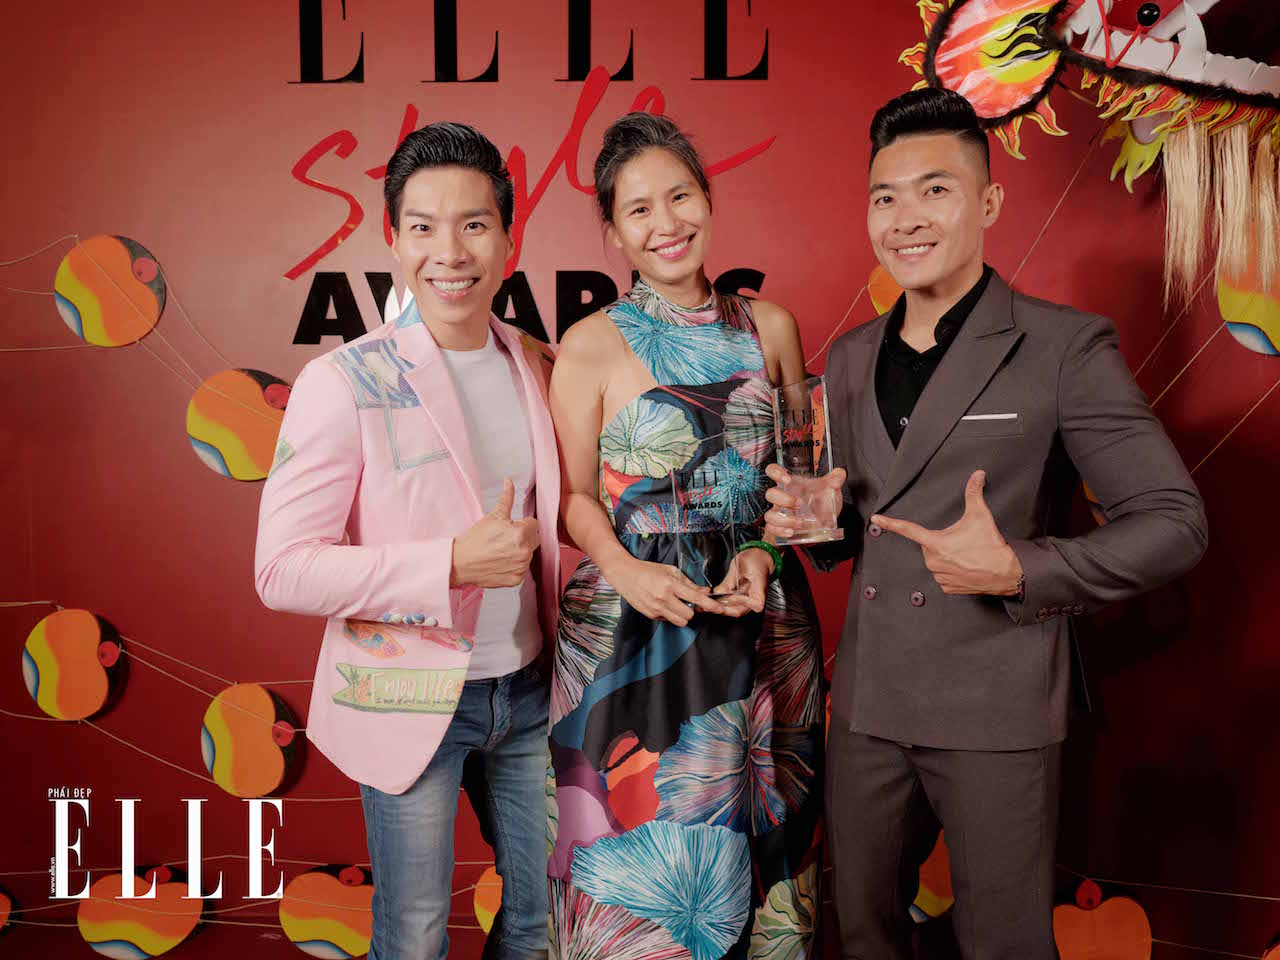 hình ảnh backdrop đỏ tại lễ trao giải ELLE Style Award 2019 quốc cơ quốc nghiệp thuỷ nguyễn